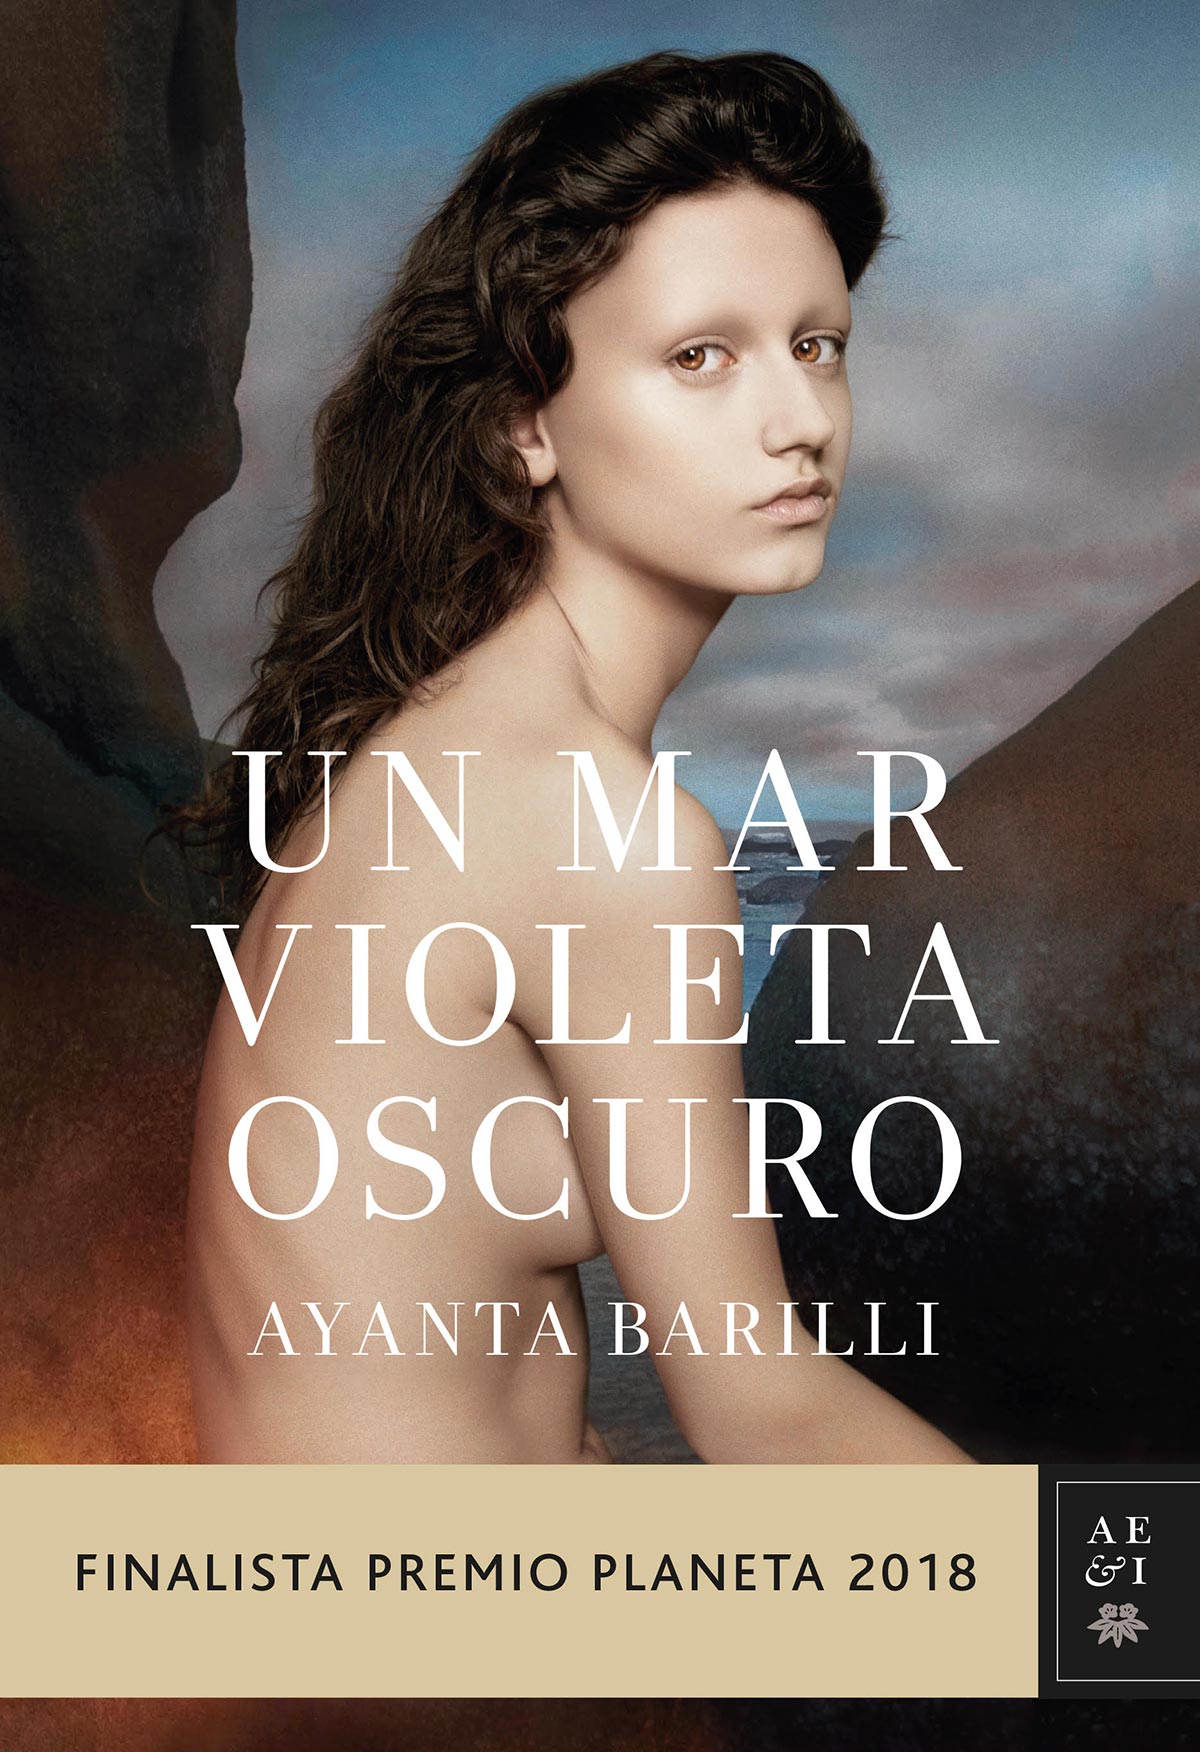 'Un mar violeta oscuro' de Ayanta Barilli Finalista Premio Planeta 2018 Librería Semuret